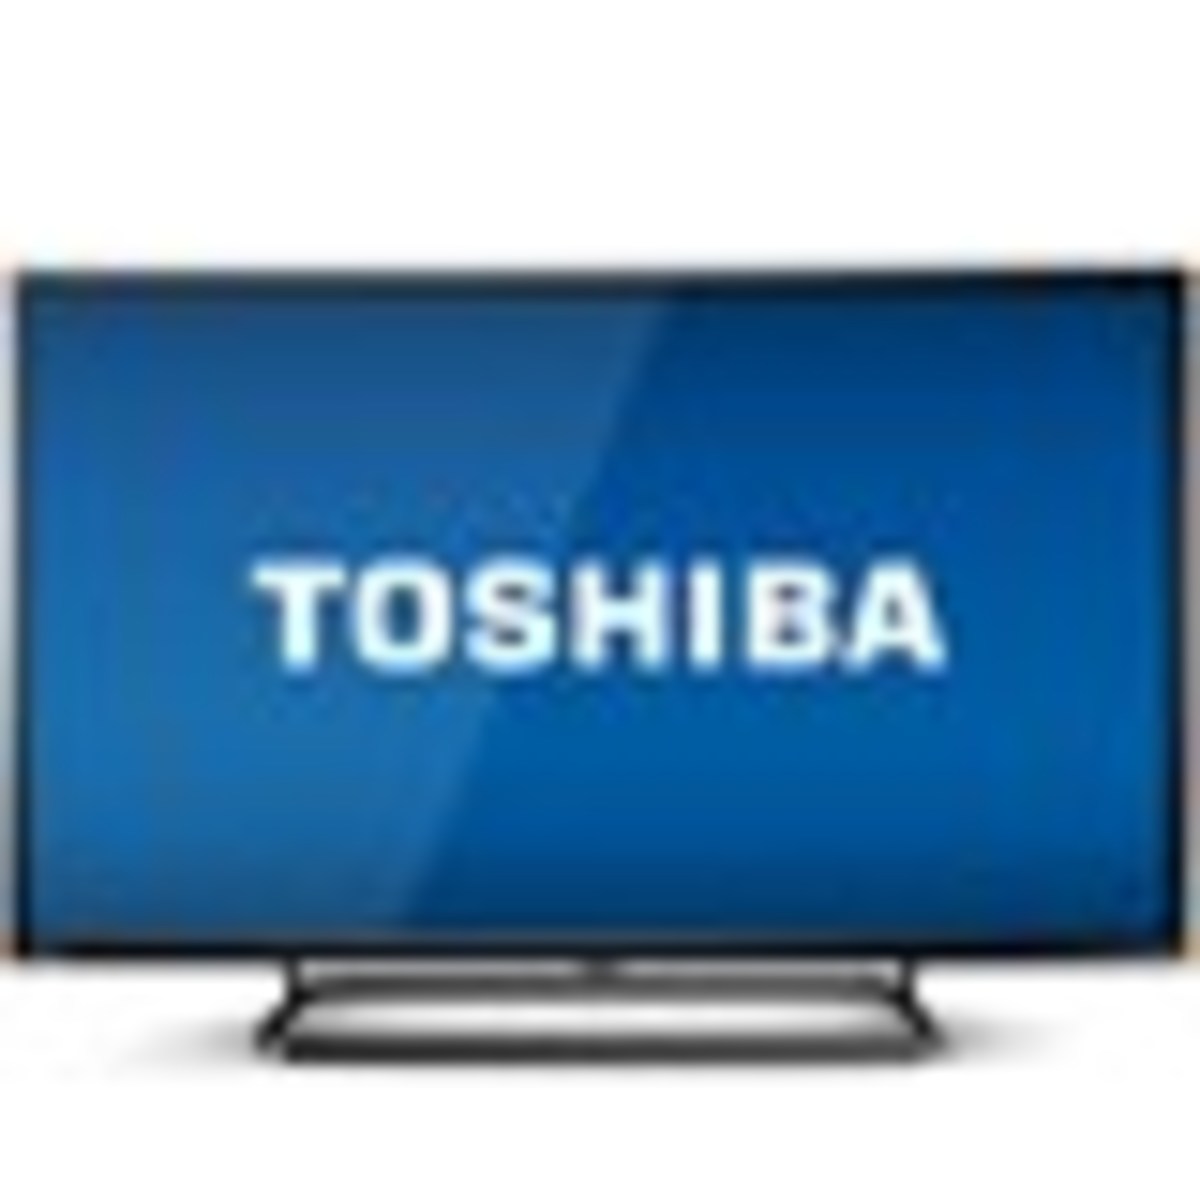 Toshiba LED TV TS1-32S1700 32inch